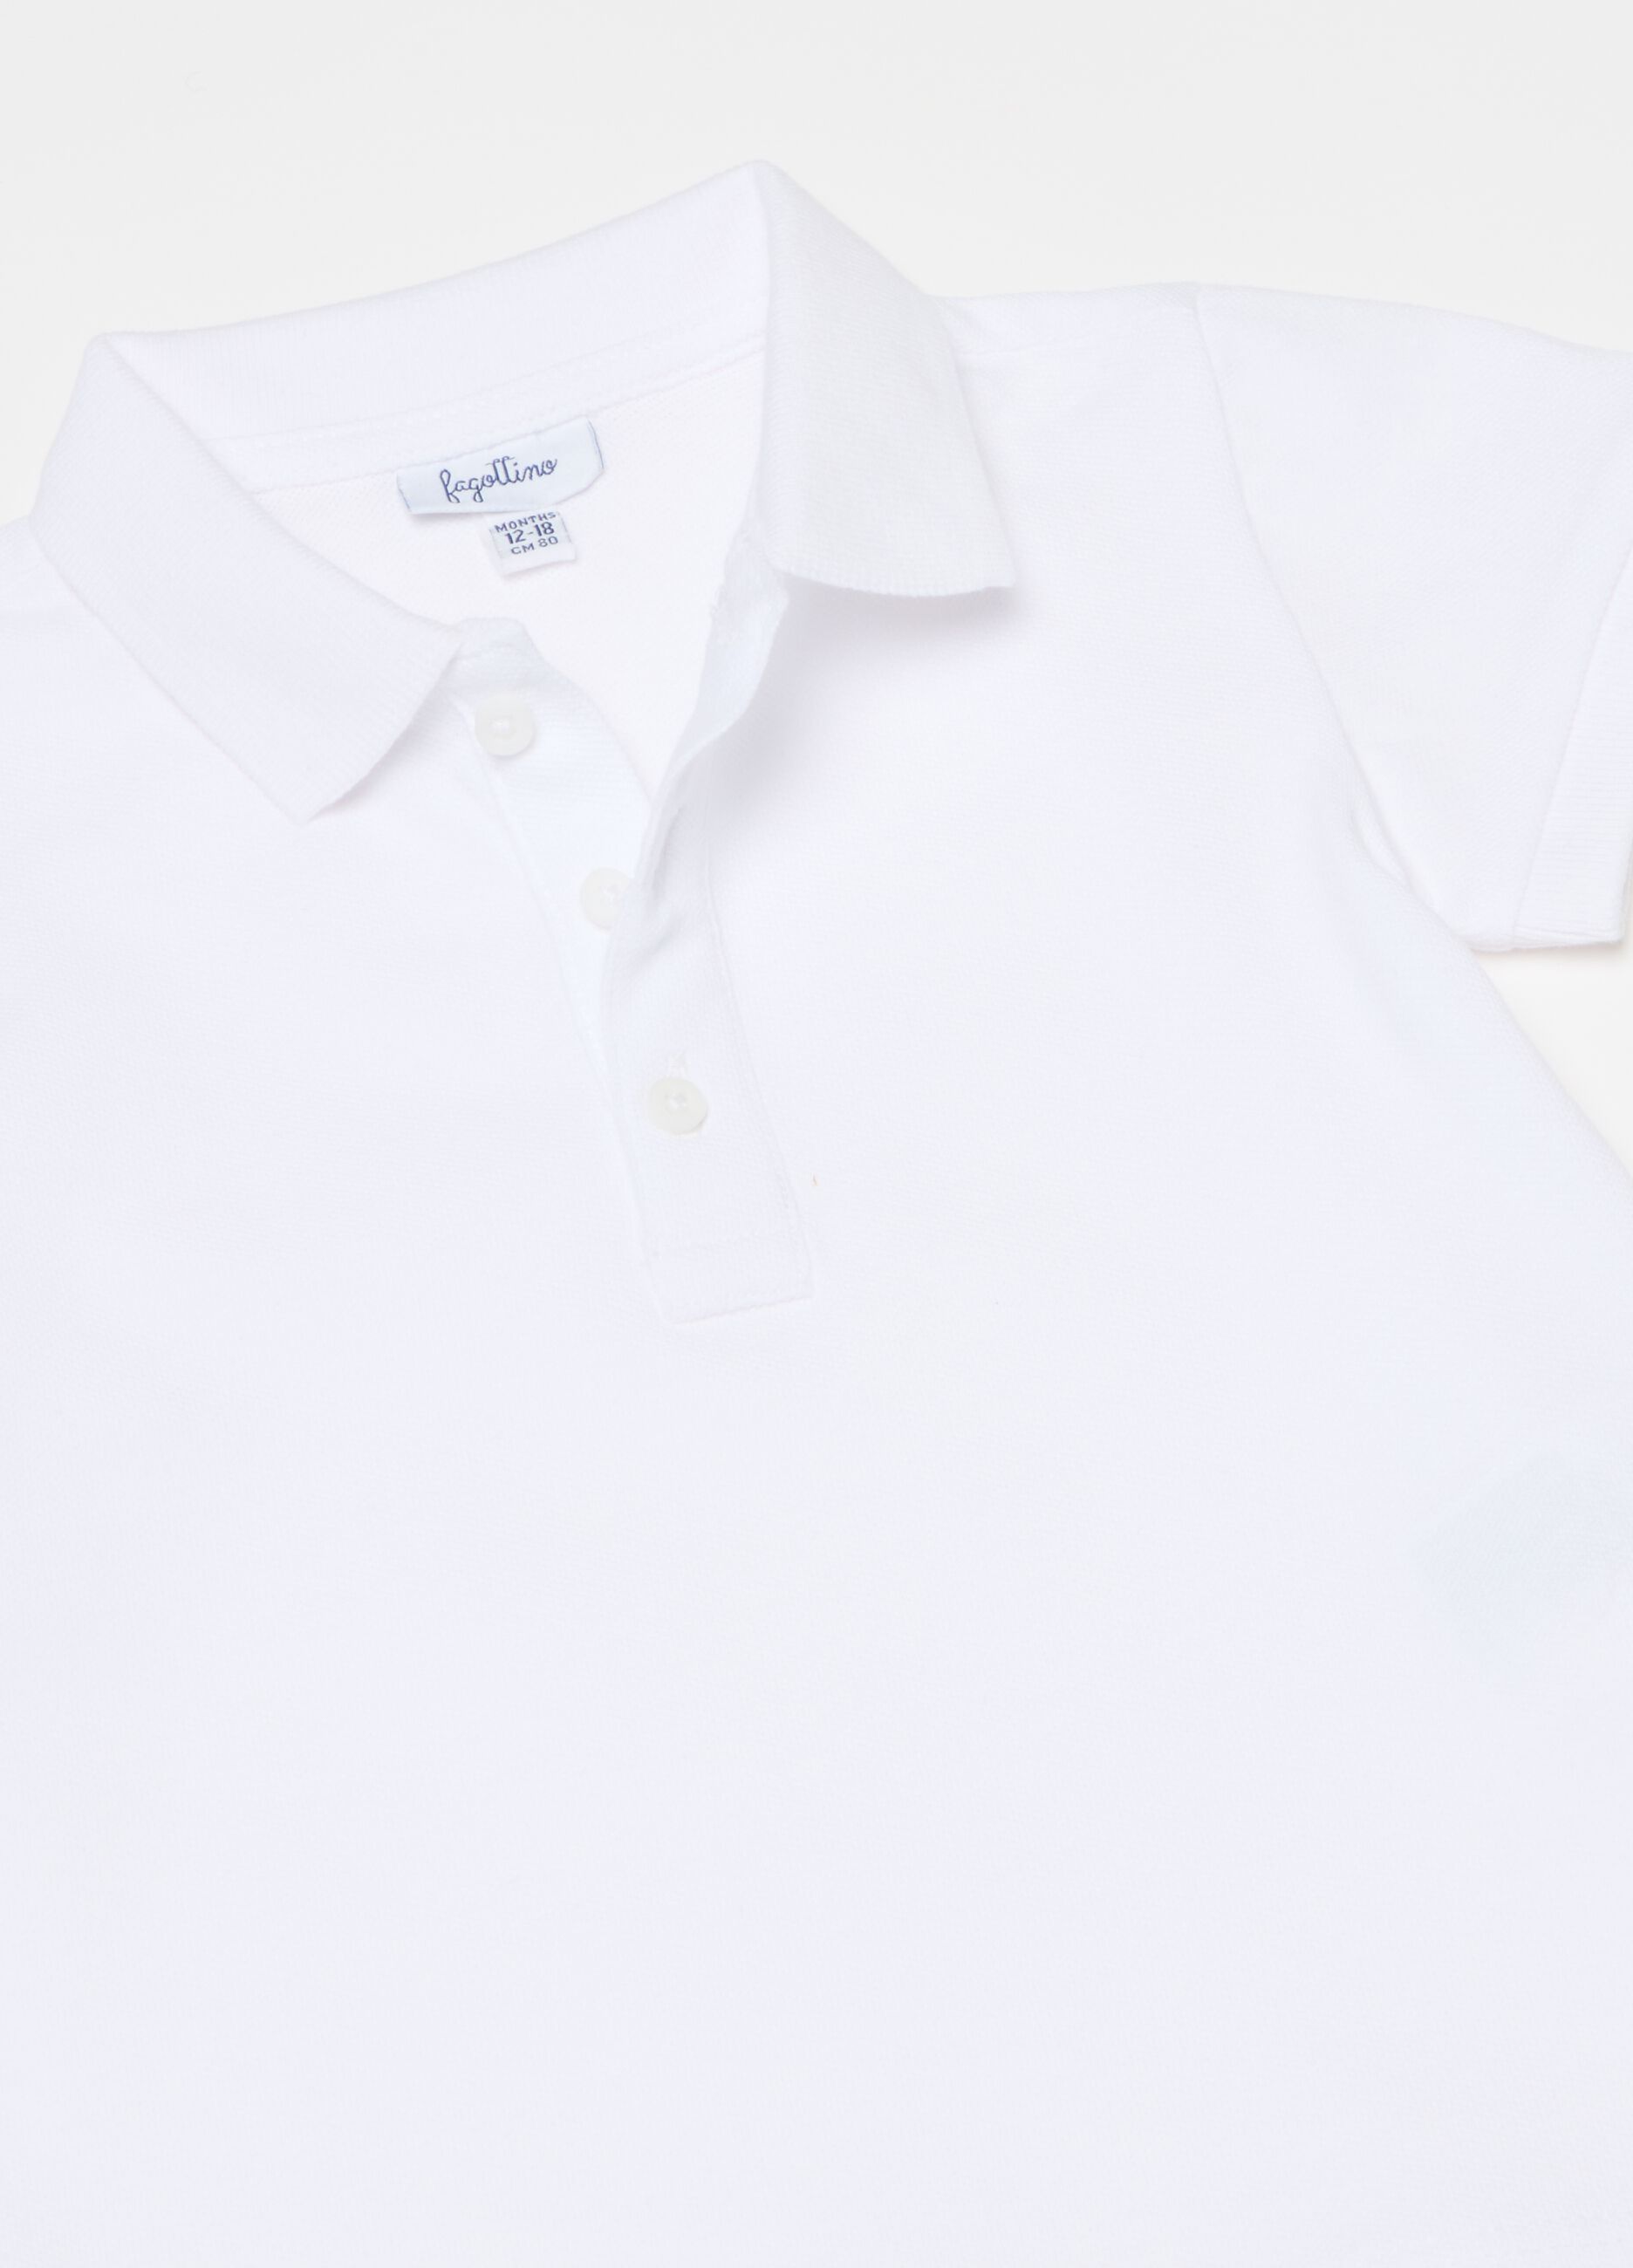 Polo shirt in cotton pique